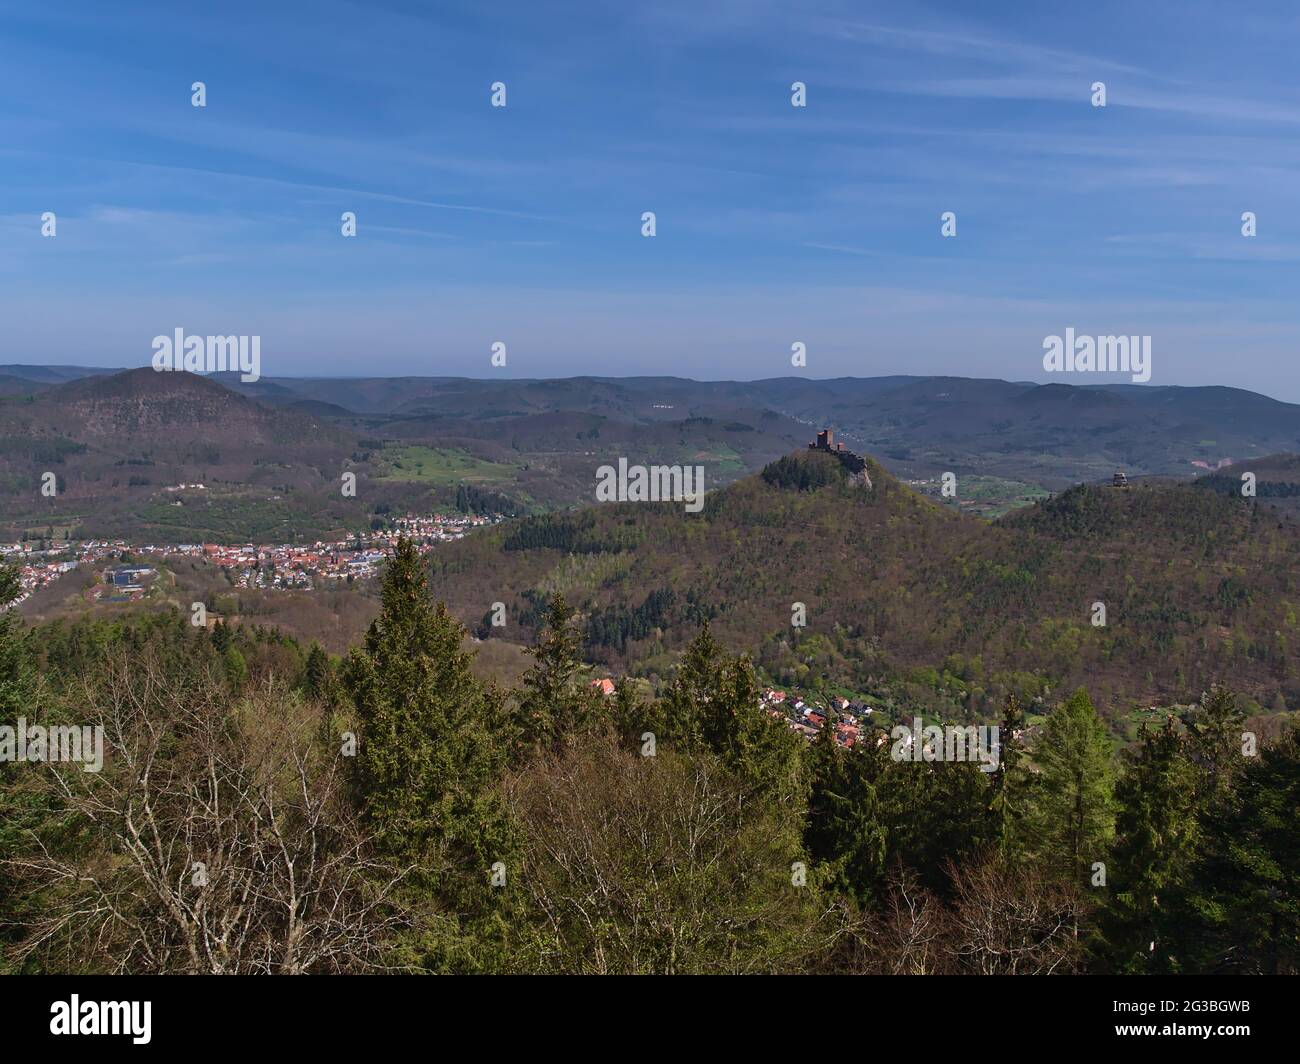 Schöner Blick über den südlichen Teil des Pfälzerwaldes, Deutschland mit der Kleinstadt Annweiler und rekonstruierter mittelalterlicher Burg Trifels auf einem felsigen Hügel. Stockfoto